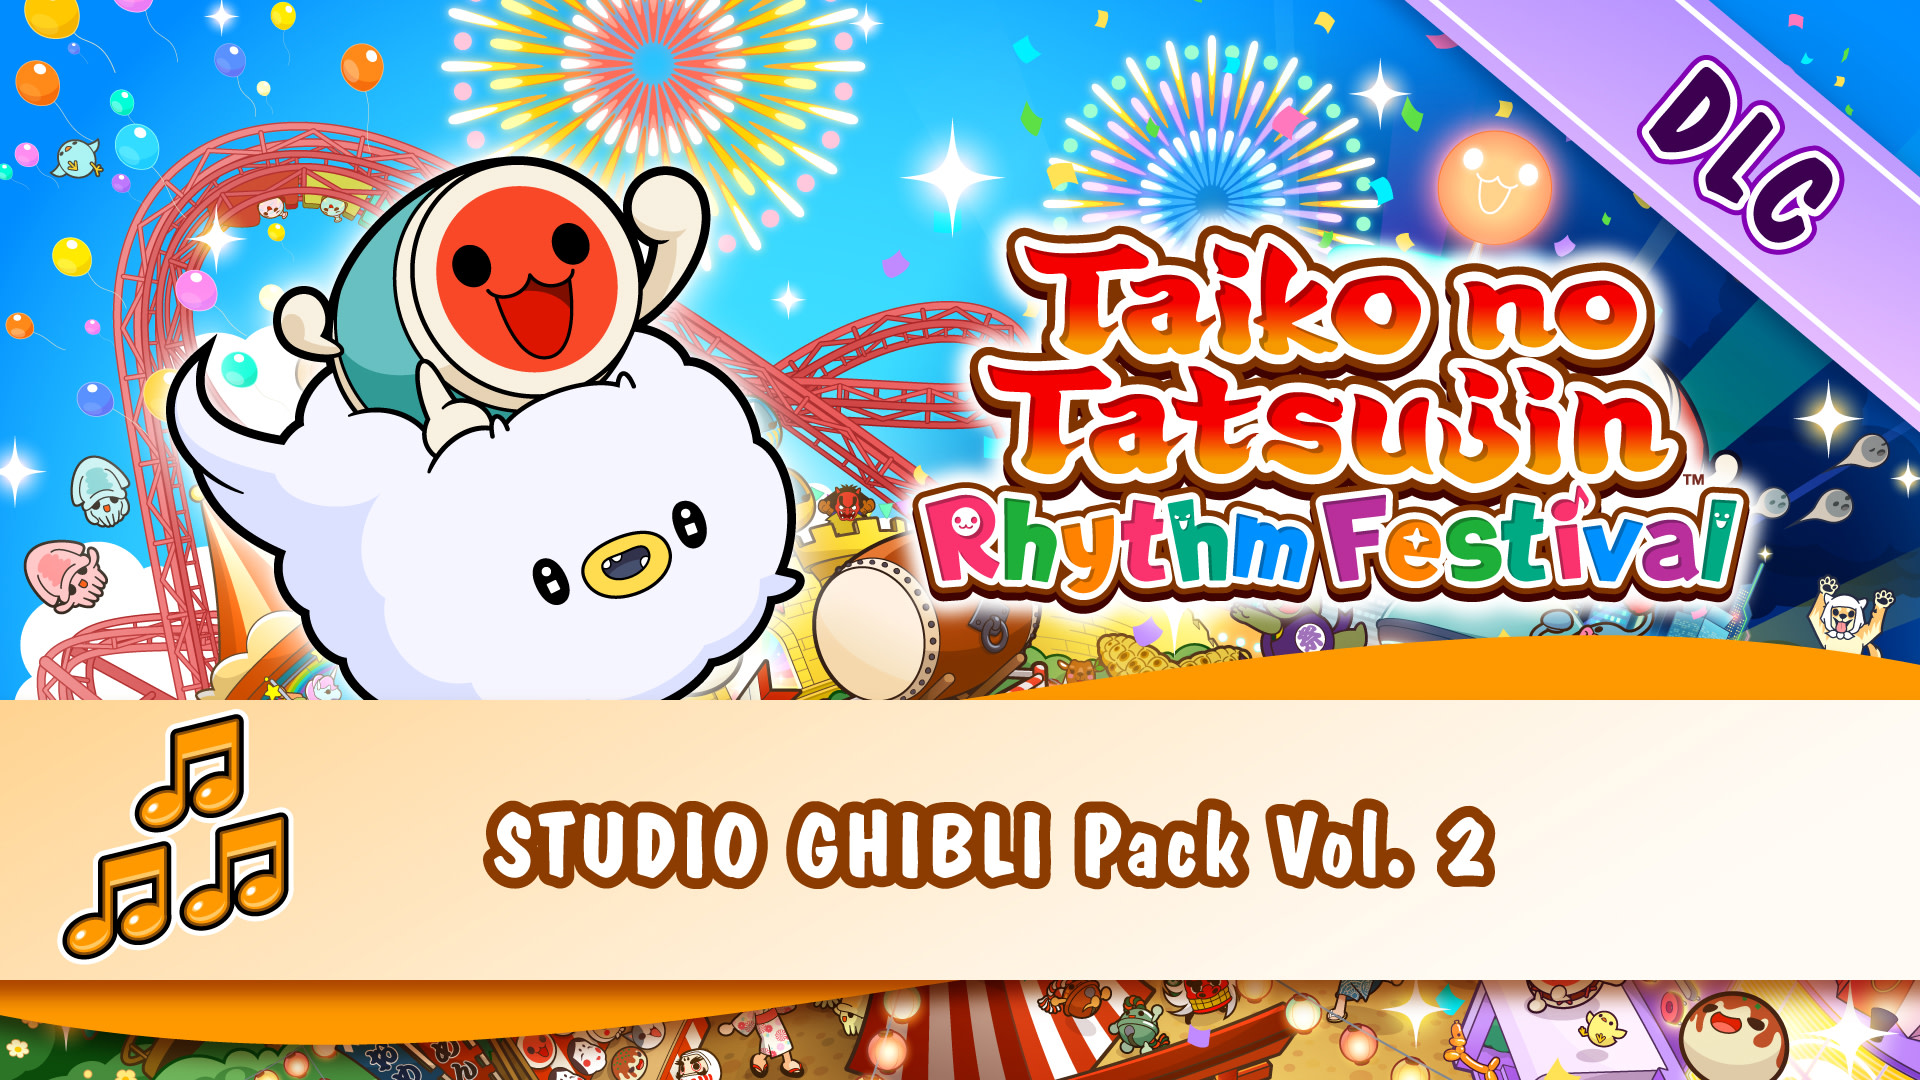 Taiko no Tatsujin: Rhythm Festival - STUDIO GHIBLI Pack Vol. 2